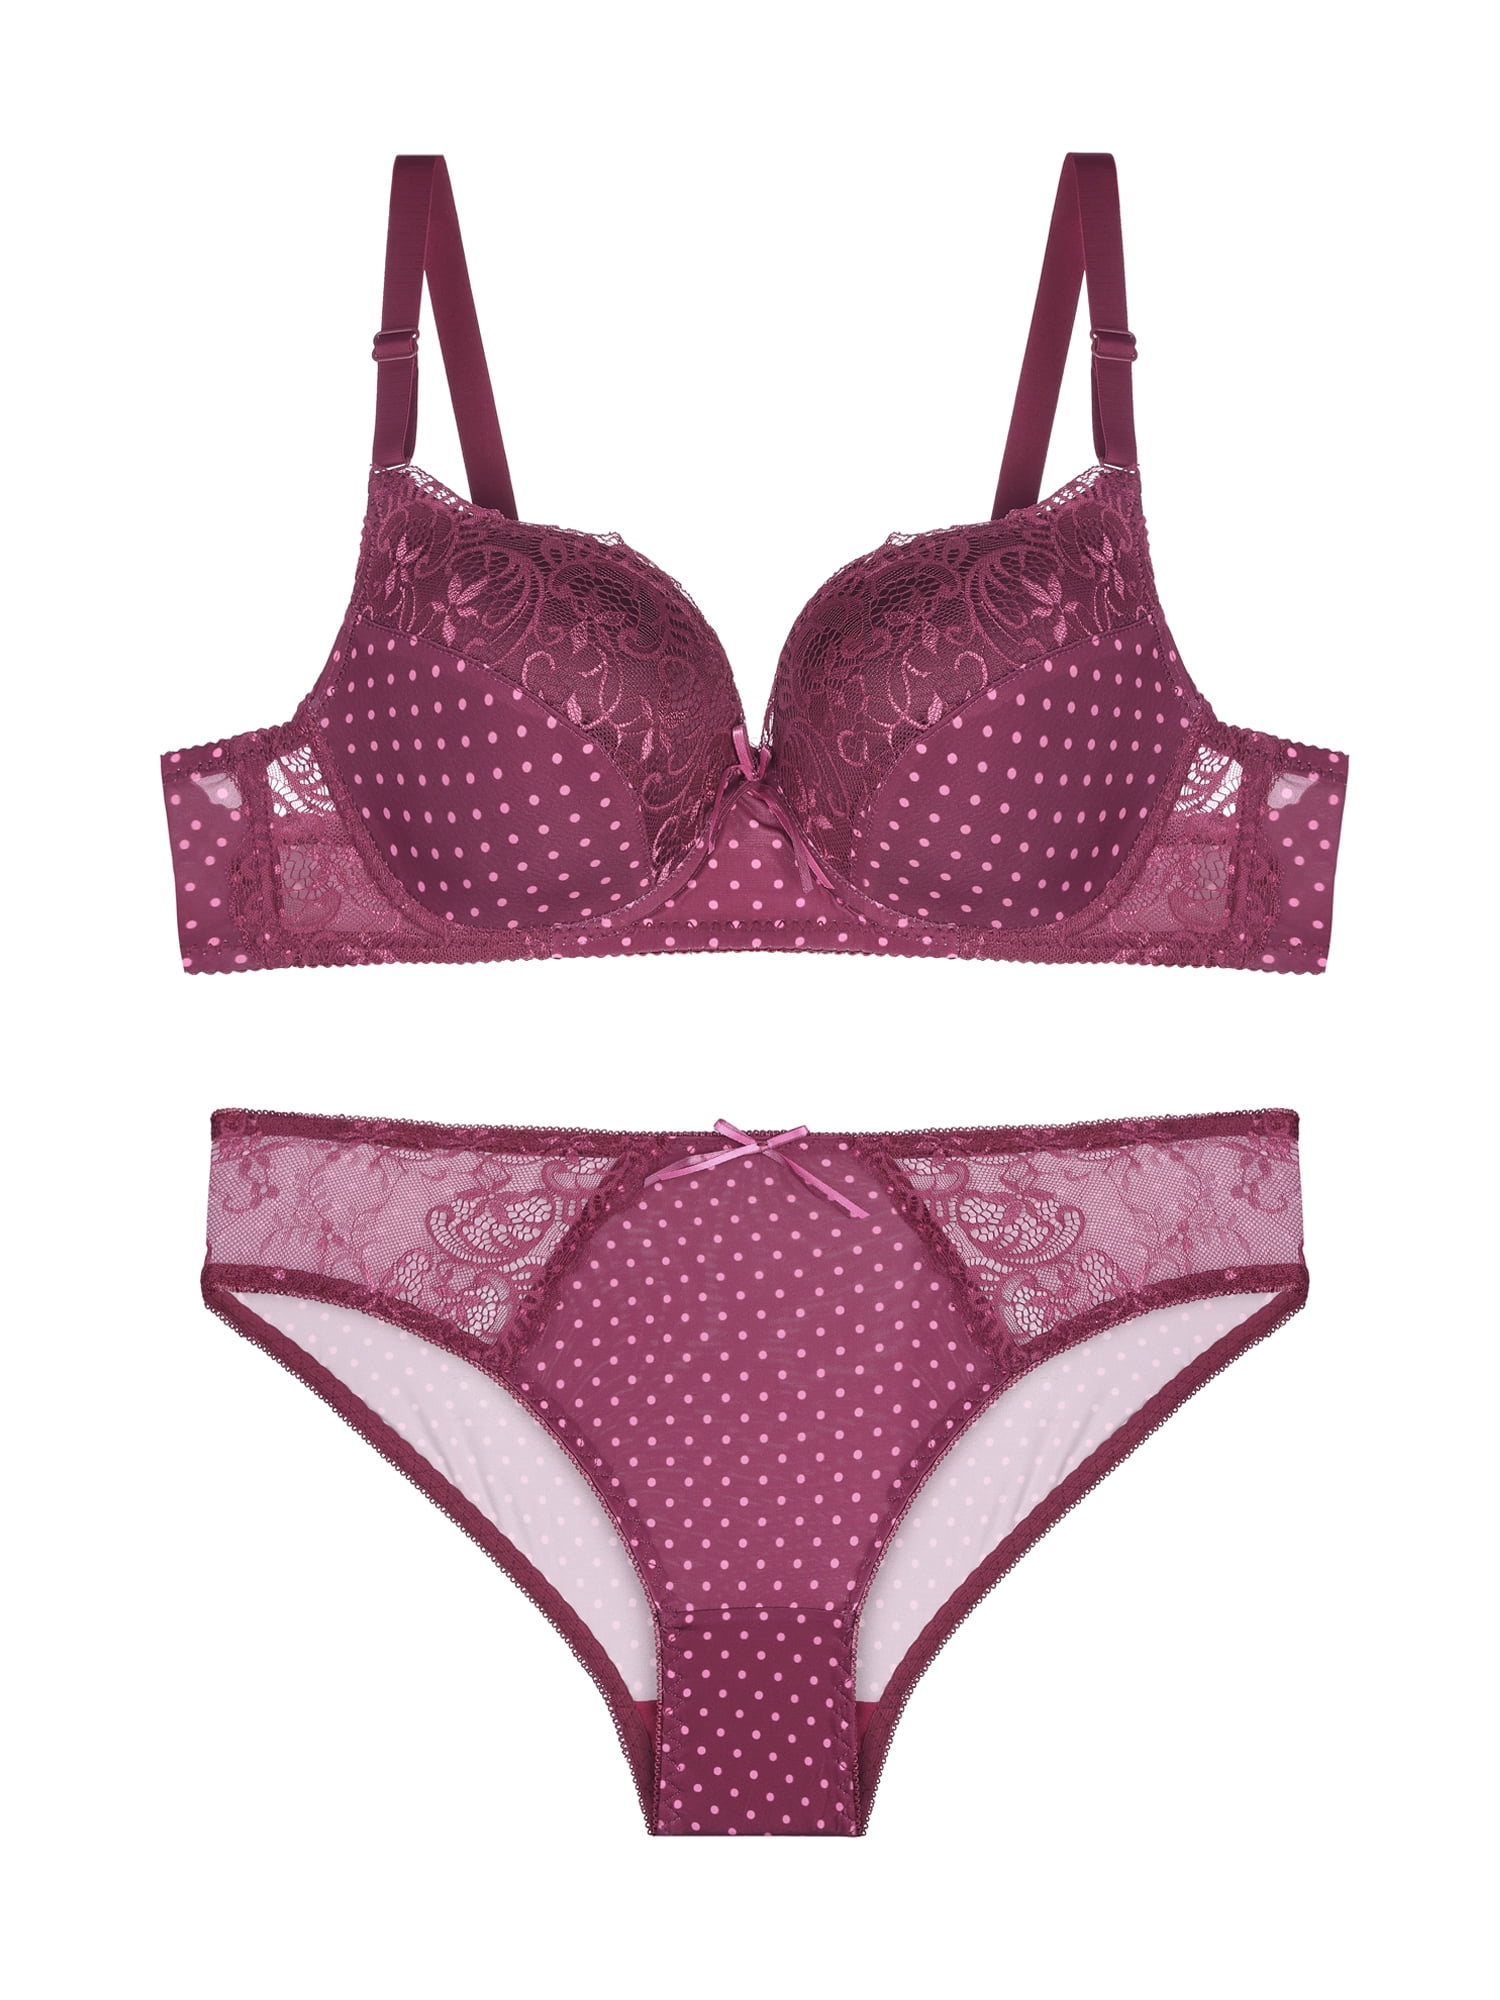 Unique Bargains Women's Plus Size 2 Piece Lace Polka Dots Matching Bras and  Panty Set